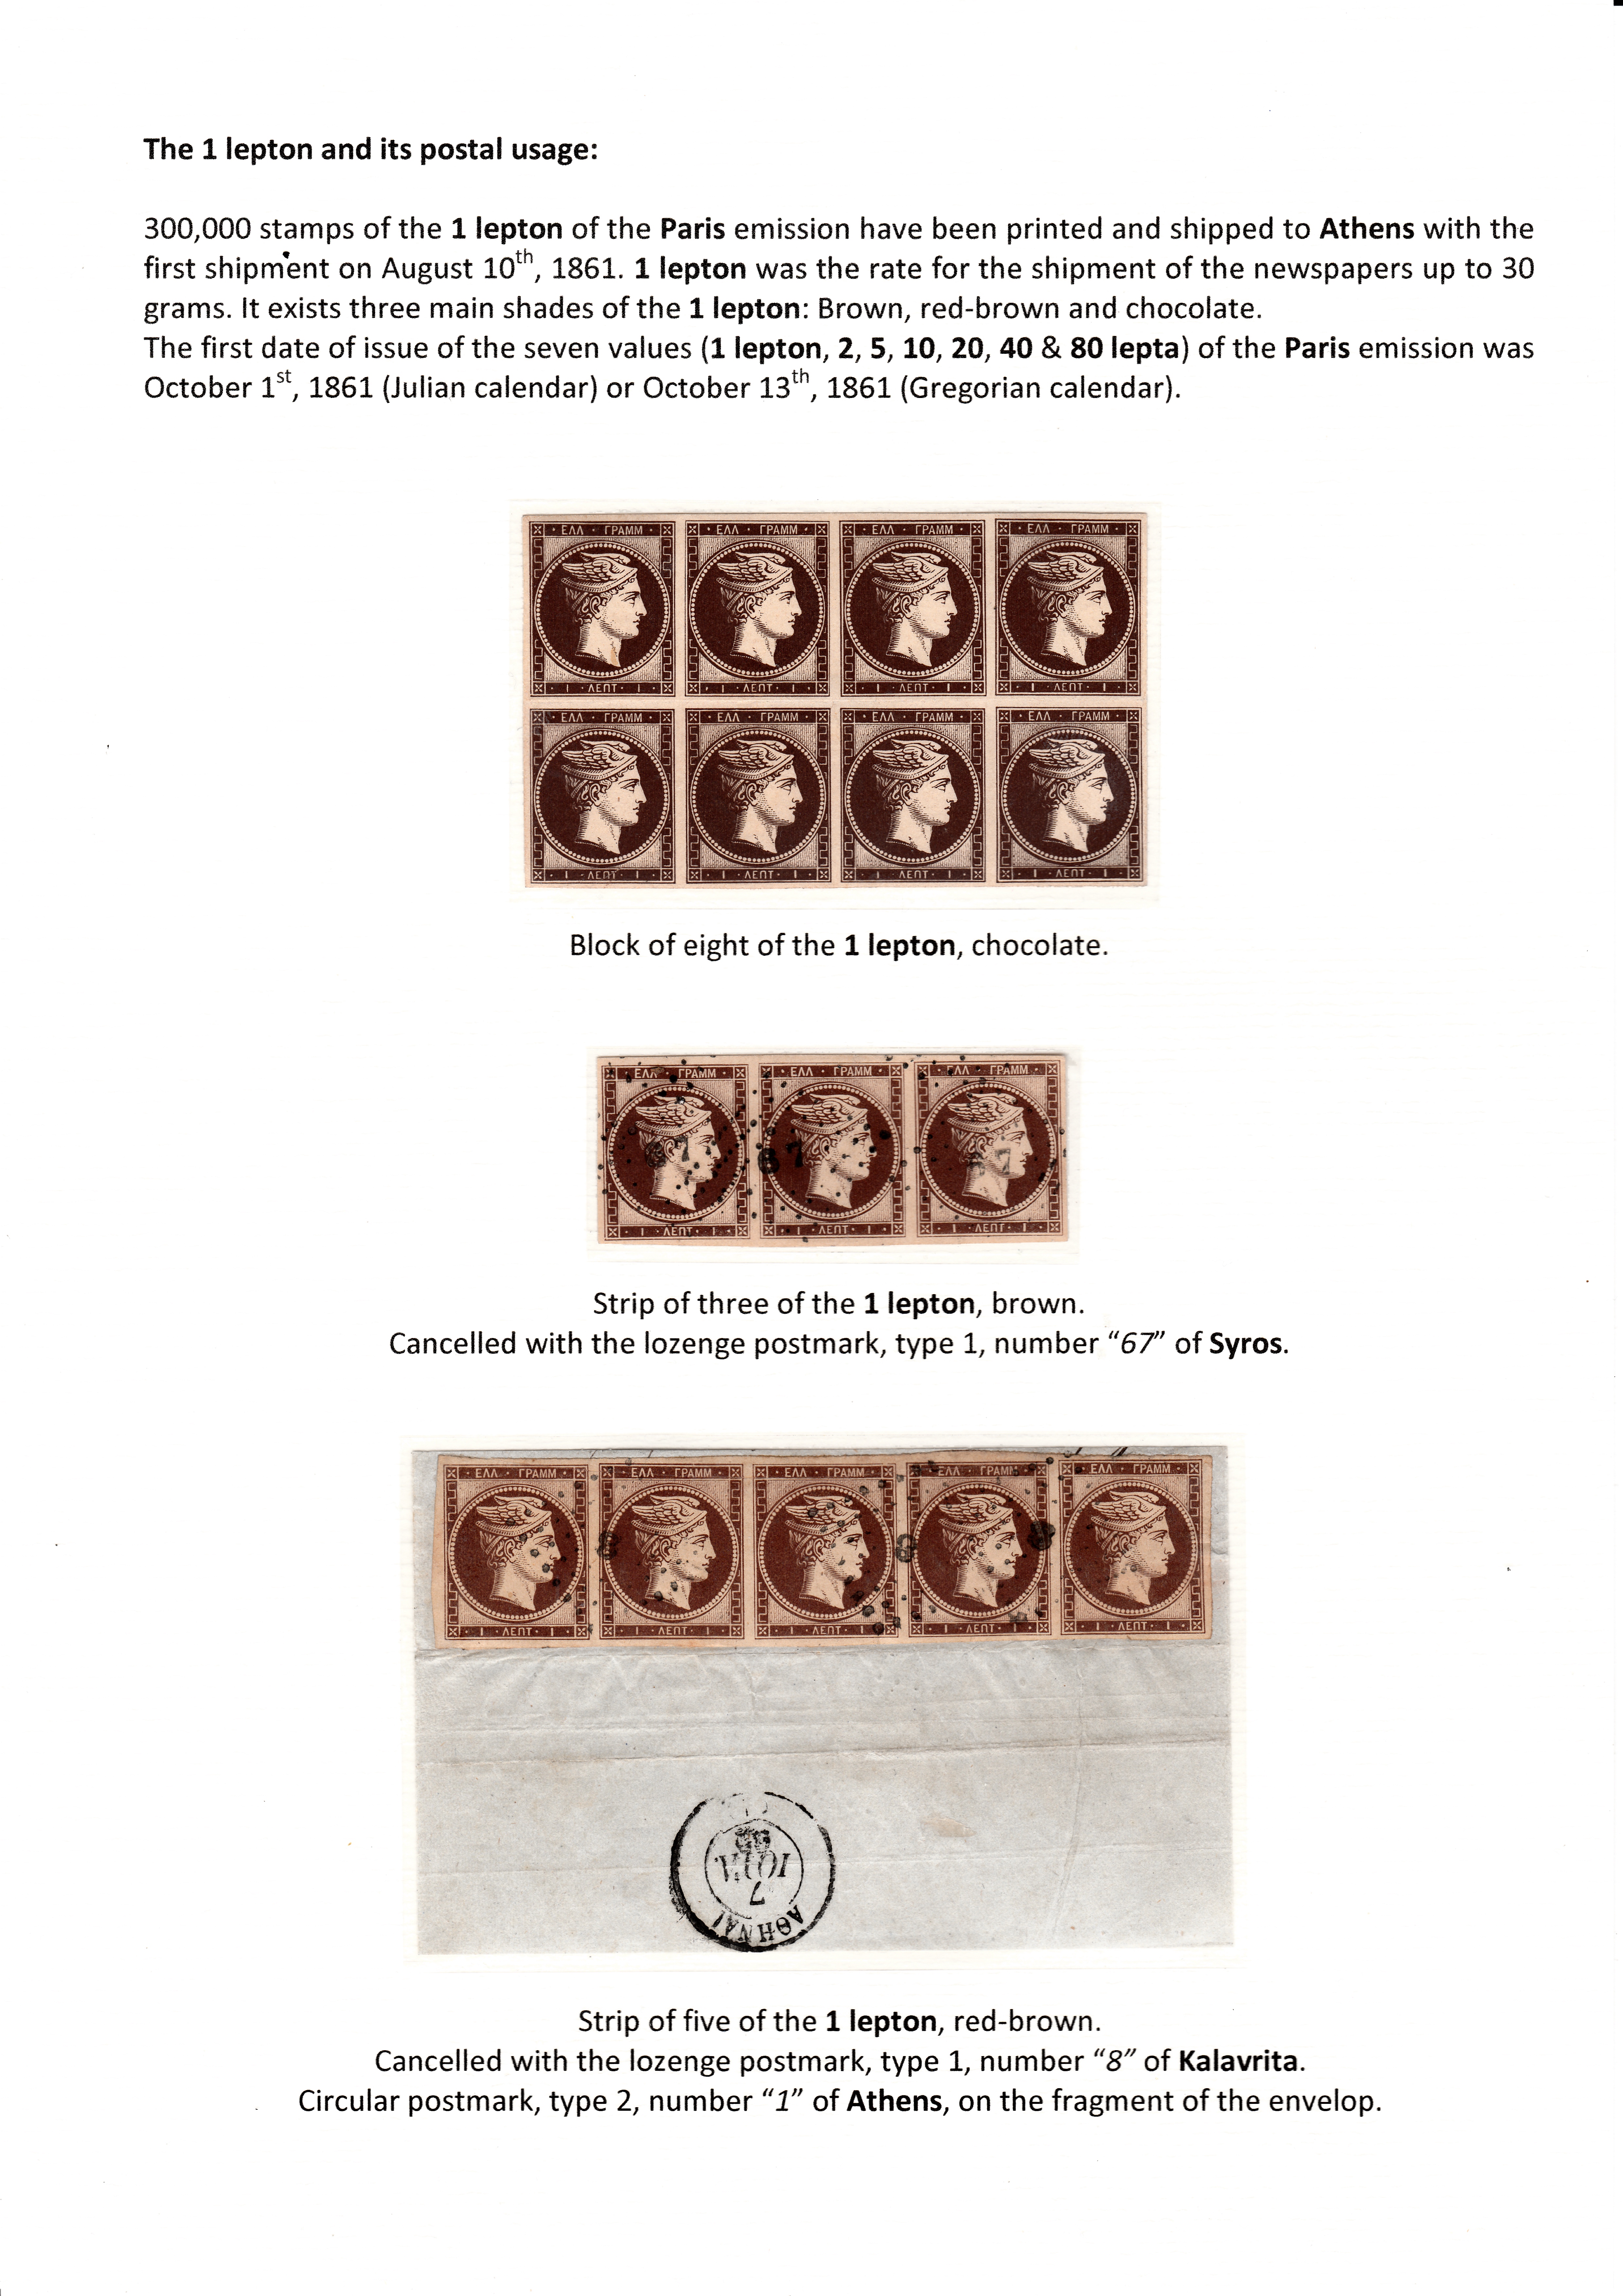 La fabrication et l���utilisation postale des tirages de Paris de la grosse t��te d���Herm��s de Gr��ce��� p. 24